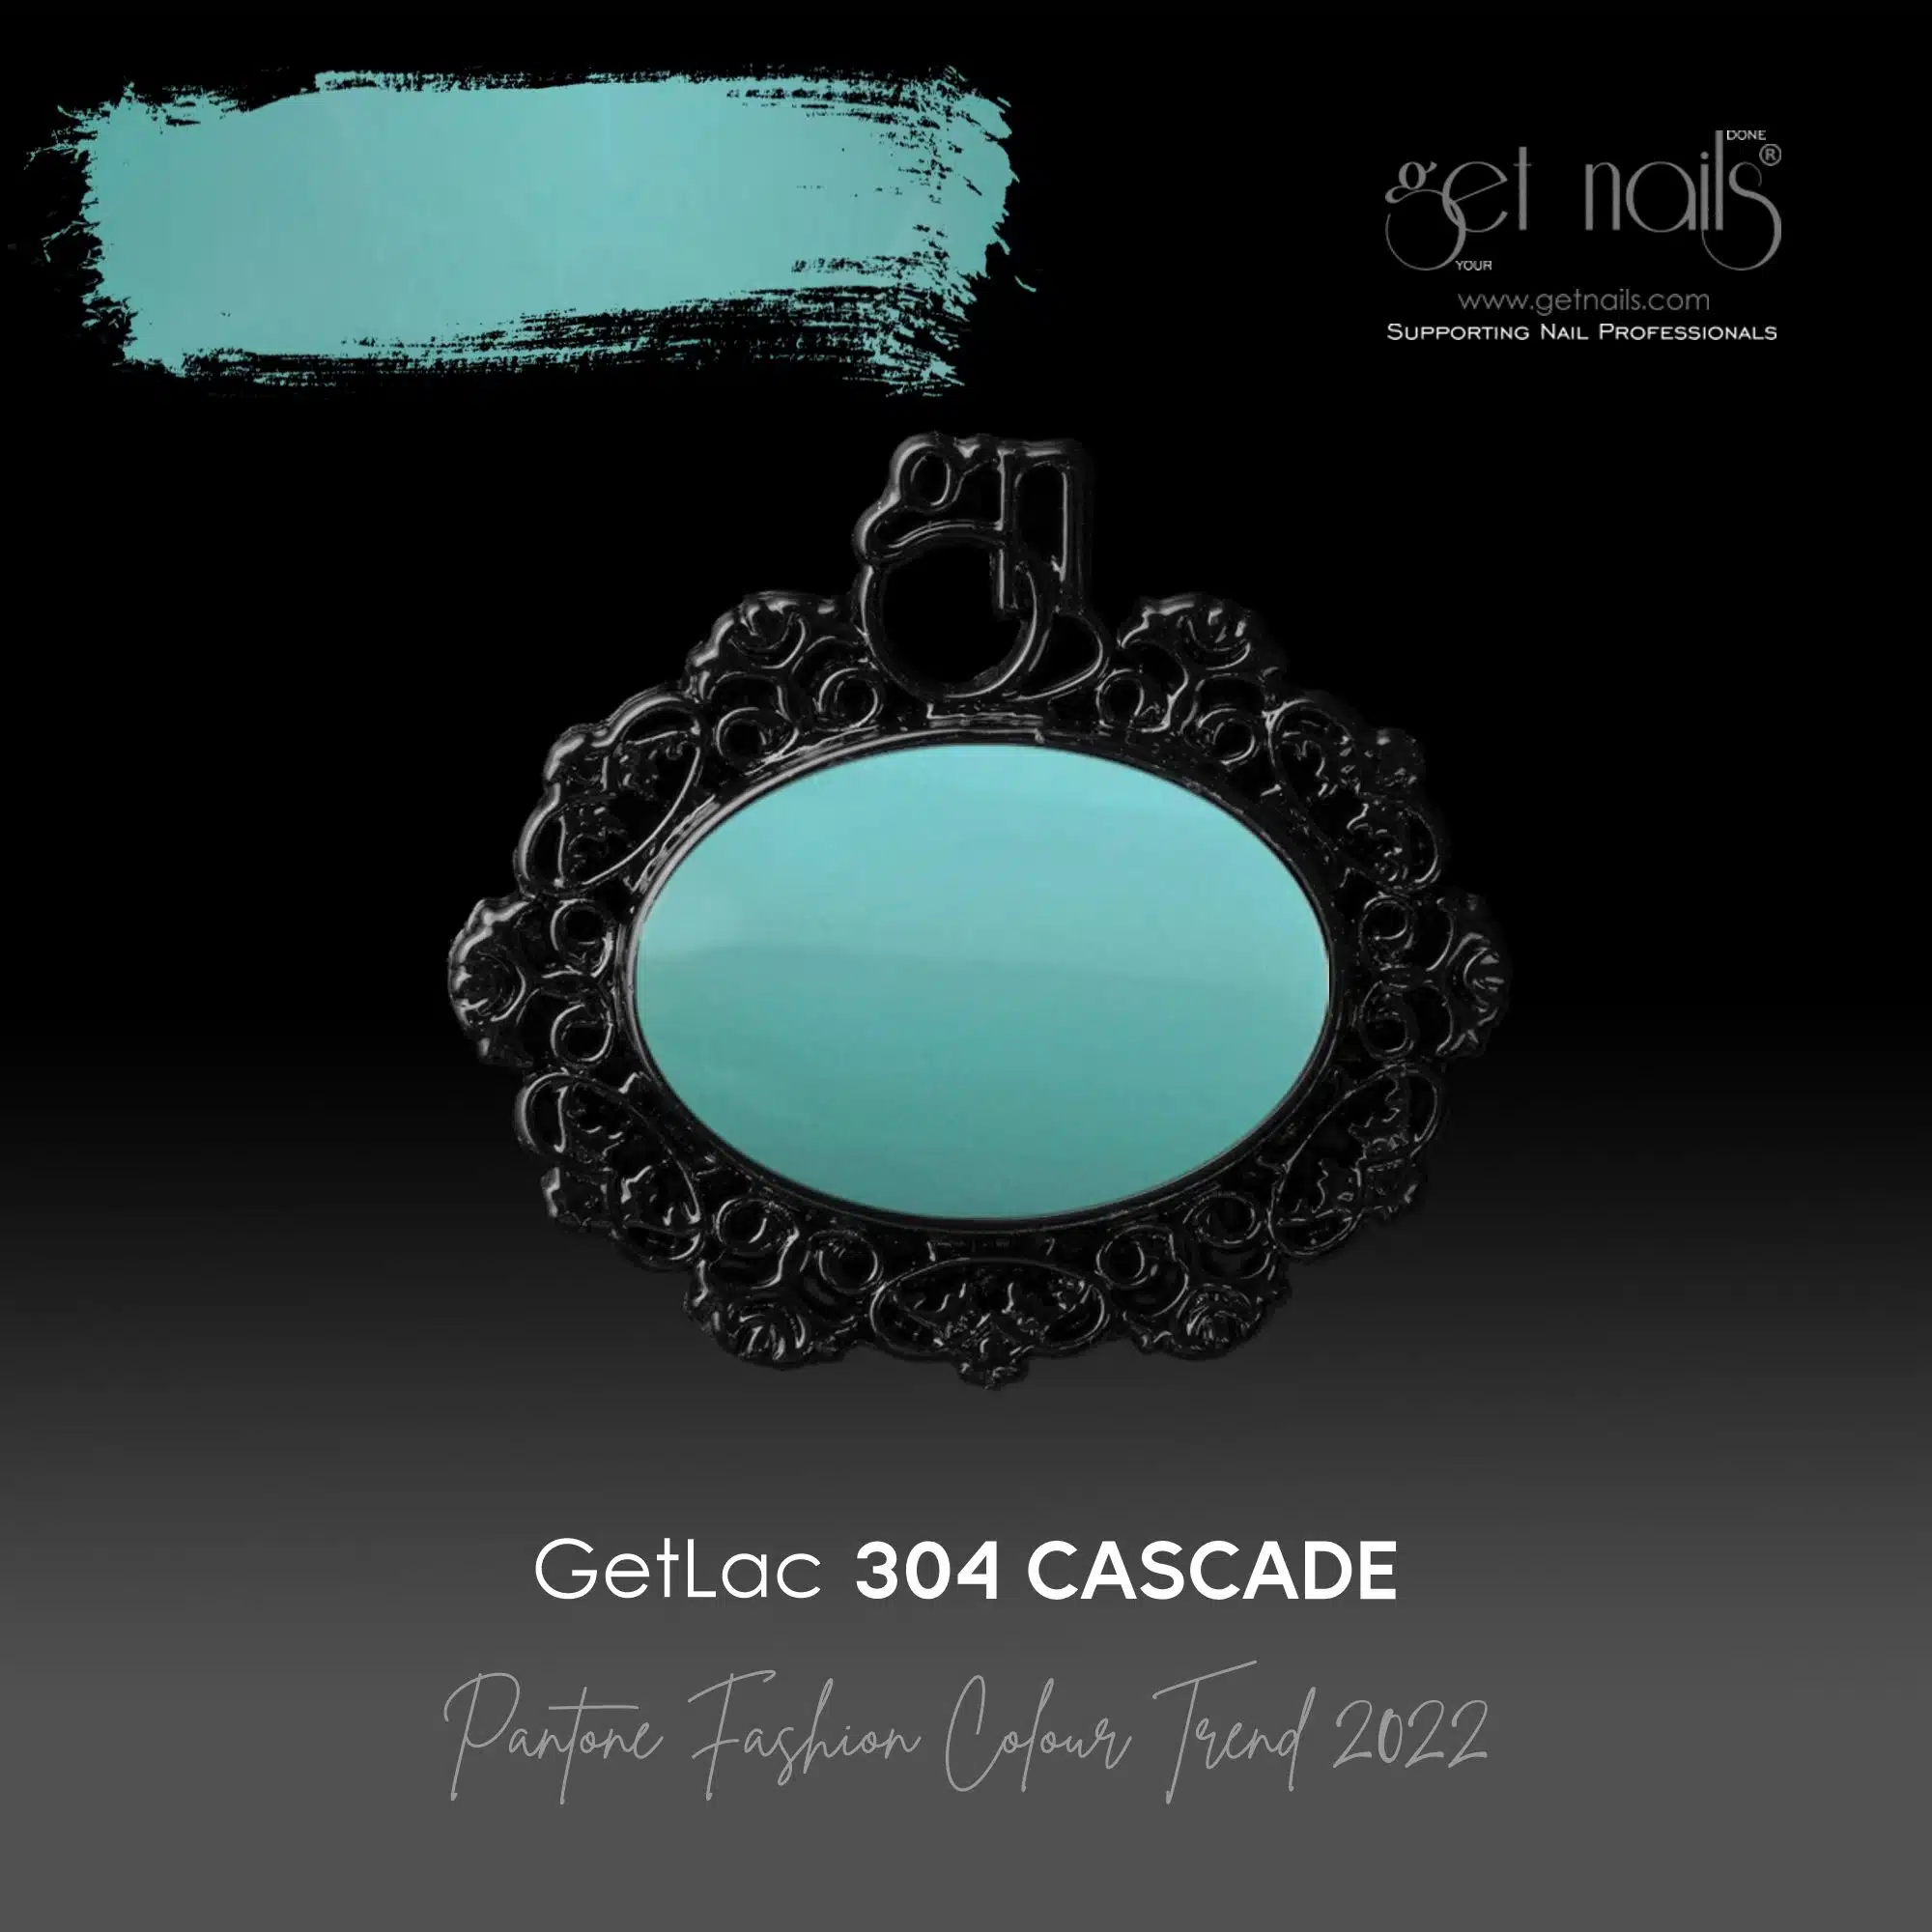 Get Nails Austria - GetLac 304 Cascade 15g